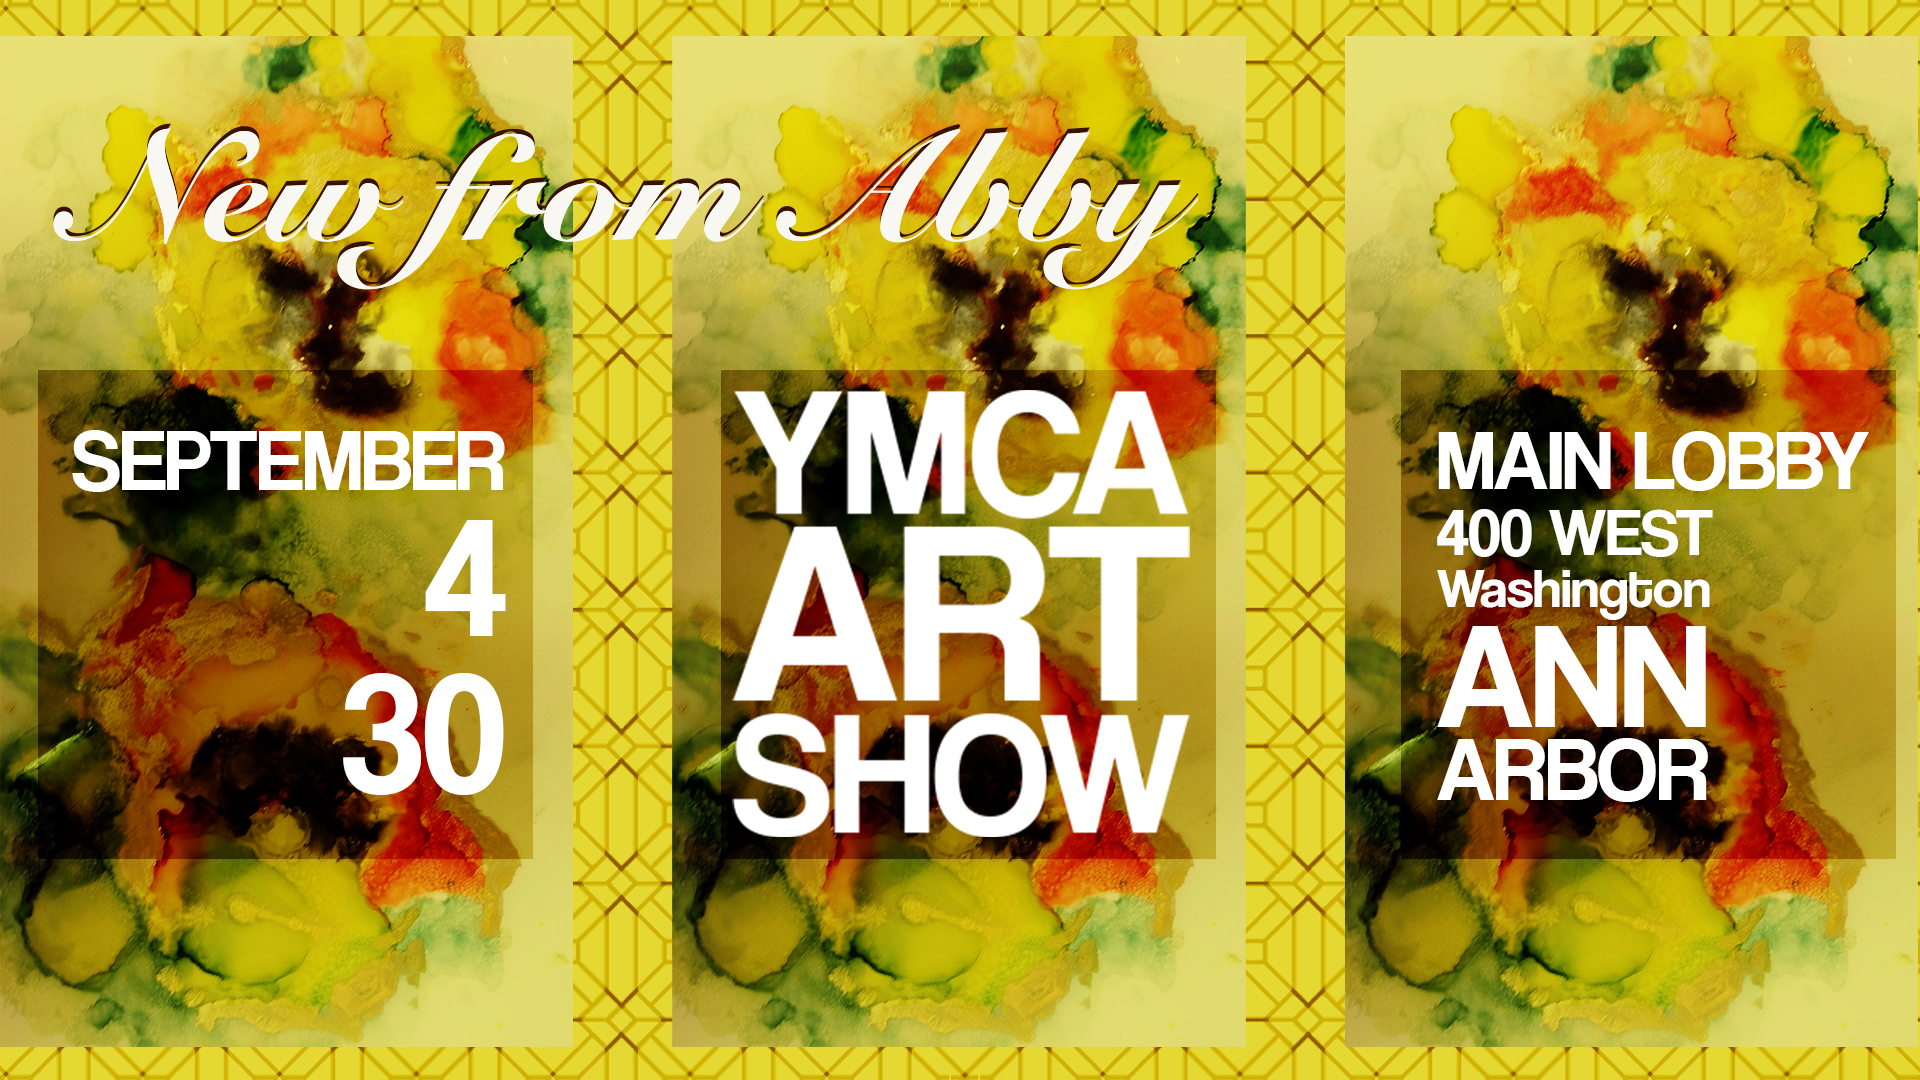 YMCA art show poster for social media